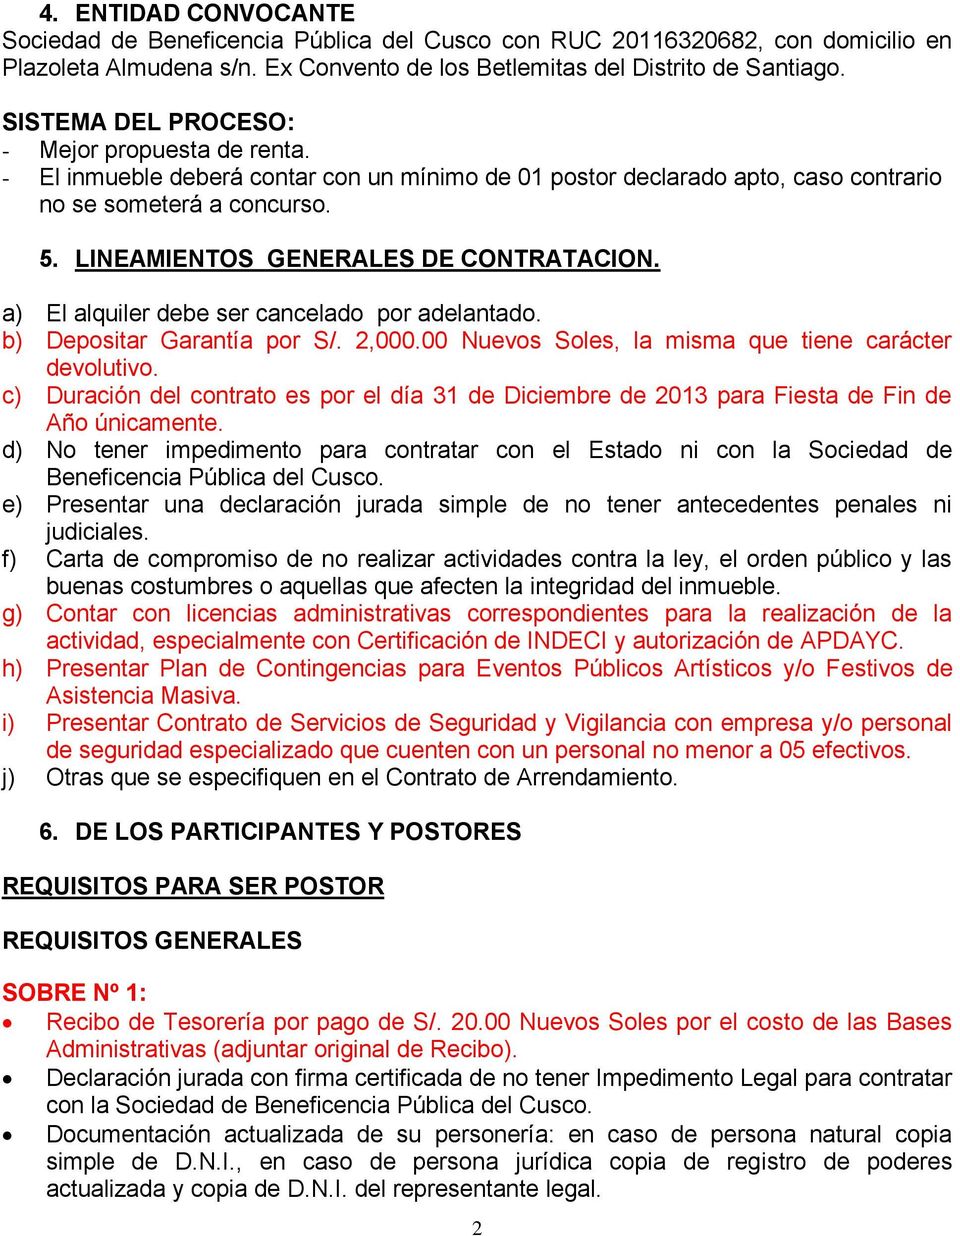 LINEAMIENTOS GENERALES DE CONTRATACION. a) El alquiler debe ser cancelado por adelantado. b) Depositar Garantía por S/. 2,000.00 Nuevos Soles, la misma que tiene carácter devolutivo.